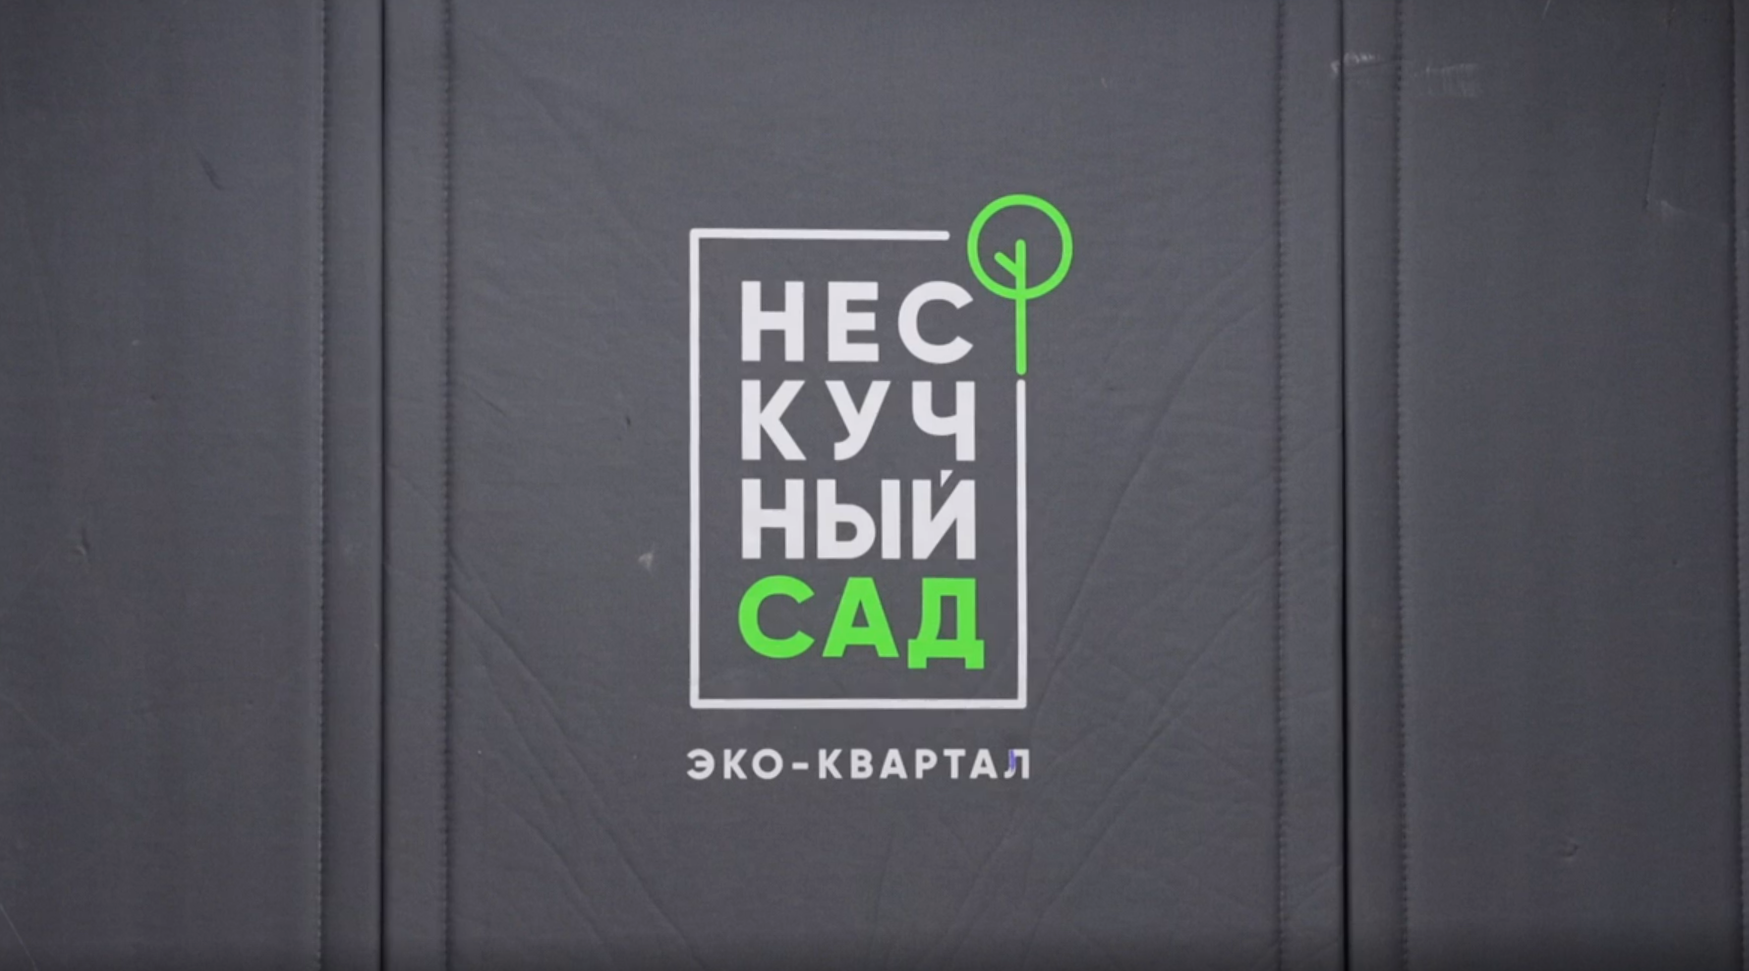 «Атомстройкомплекс» протестировал в Екатеринбурге четыре вида антивандальных покрытий для лифтов